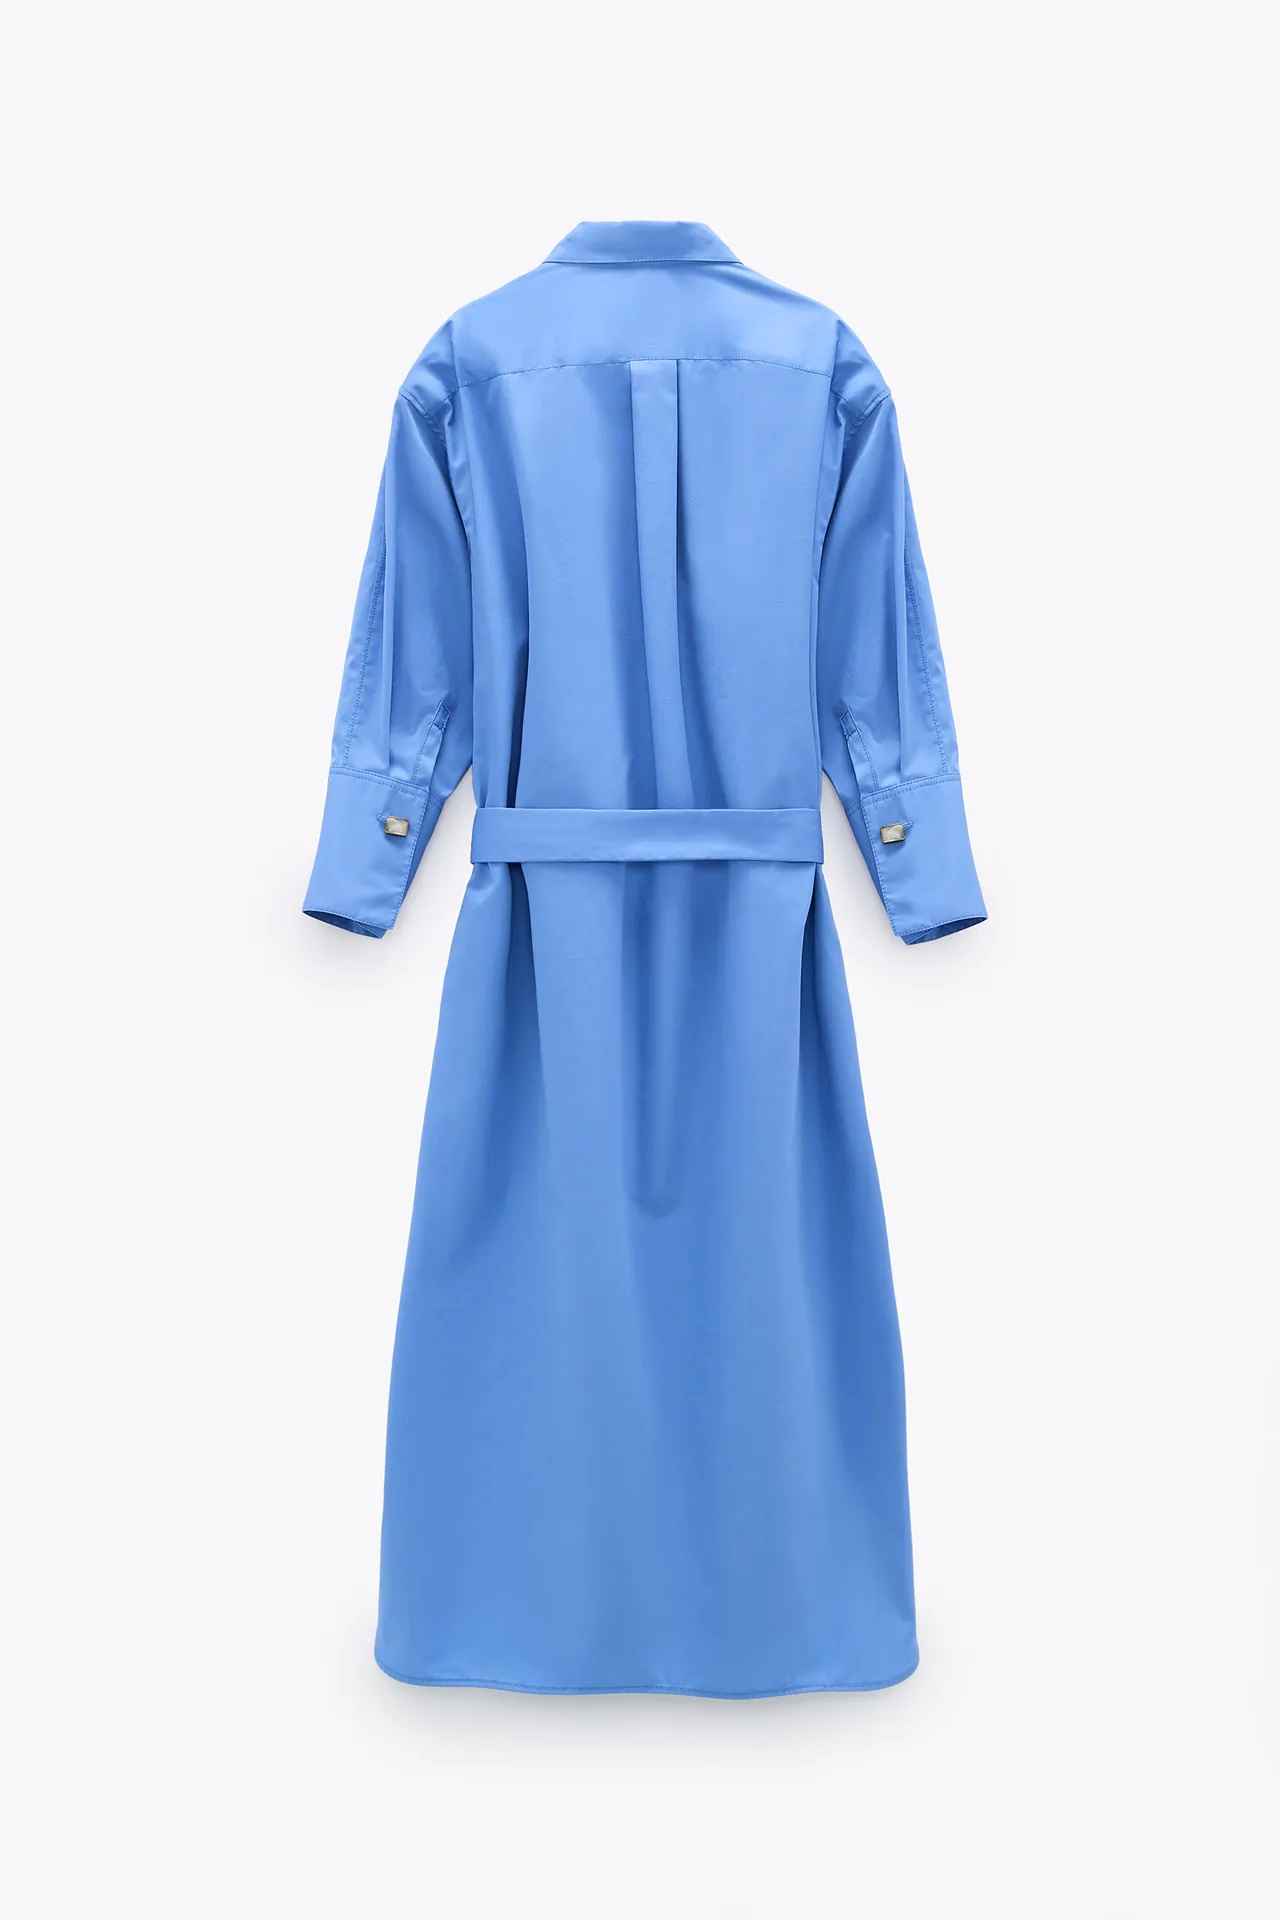 Este es el vestido camisero de Zara que luce Vicky Martín Berrocal perfecto para todas las tallas y edades